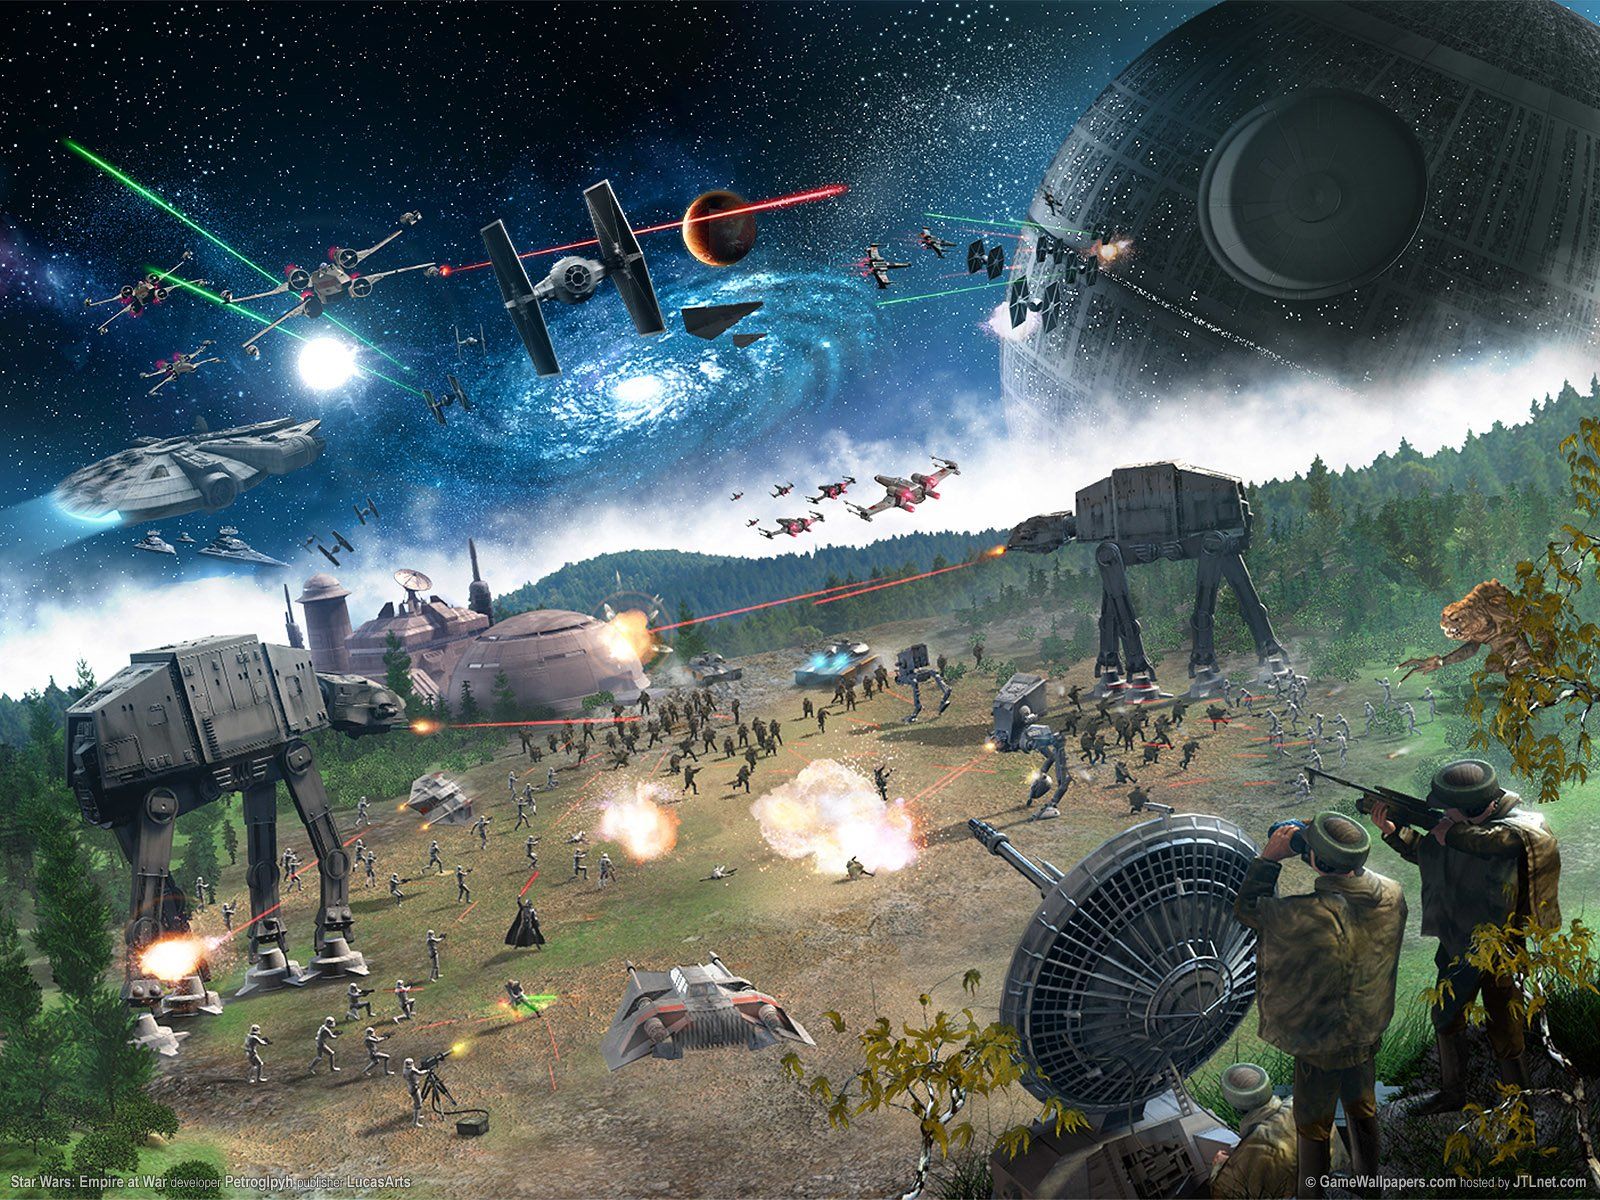 Star Wars Battle Background